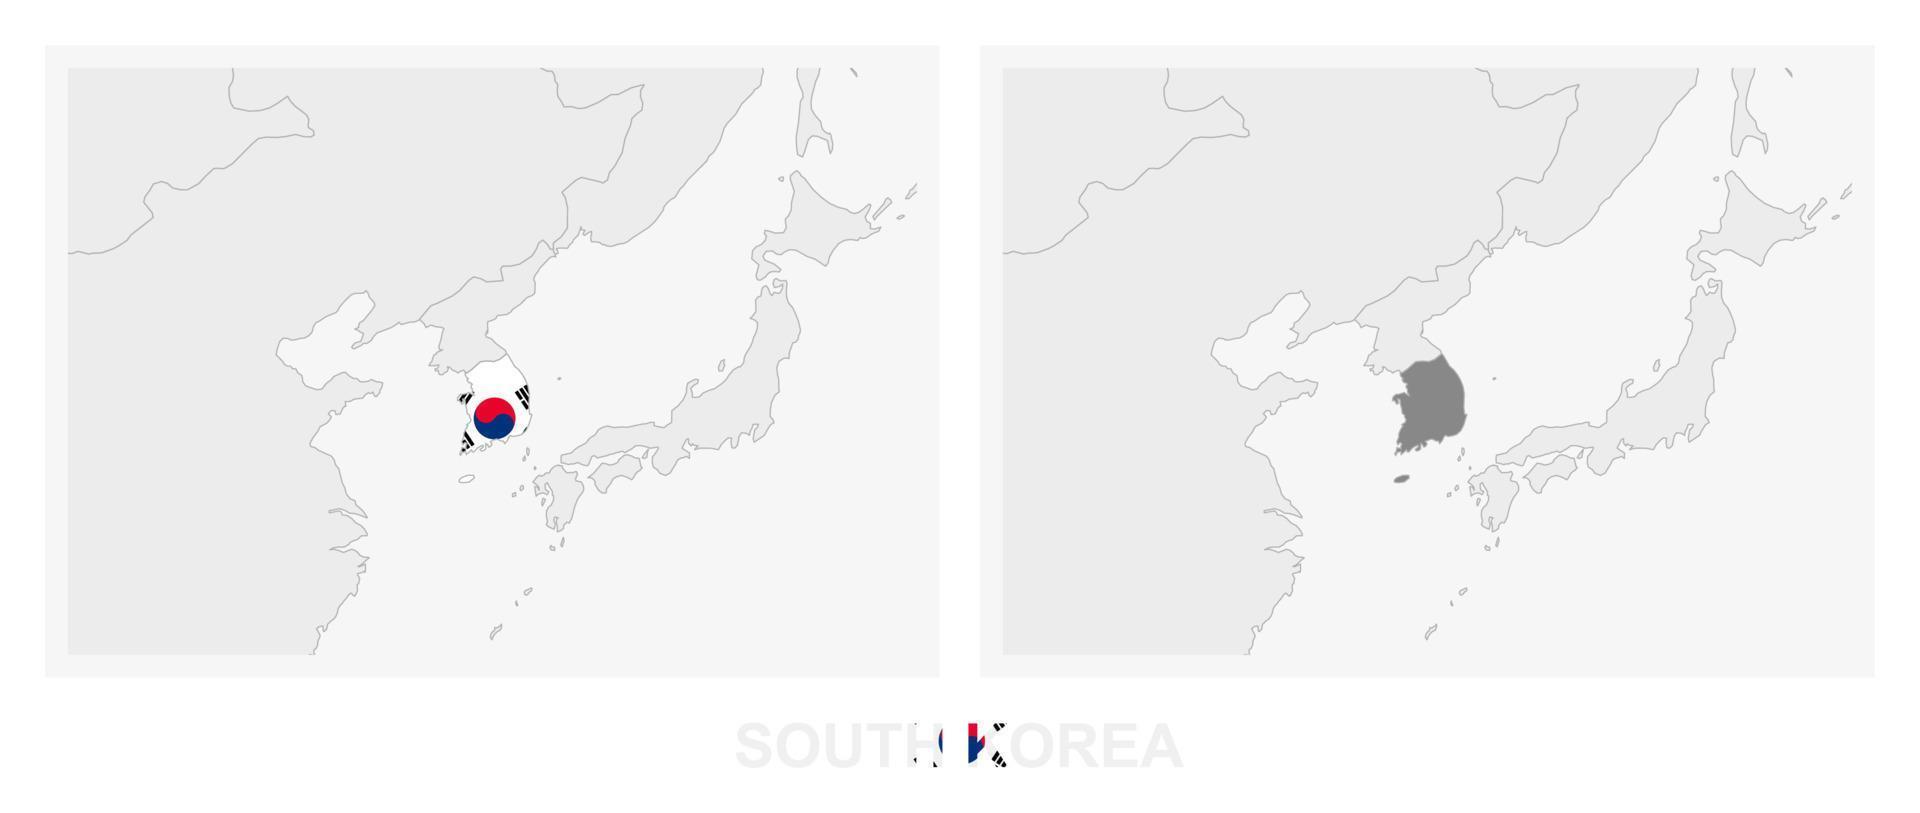 deux versions de la carte de la corée du sud, avec le drapeau de la corée du sud et surlignées en gris foncé. vecteur